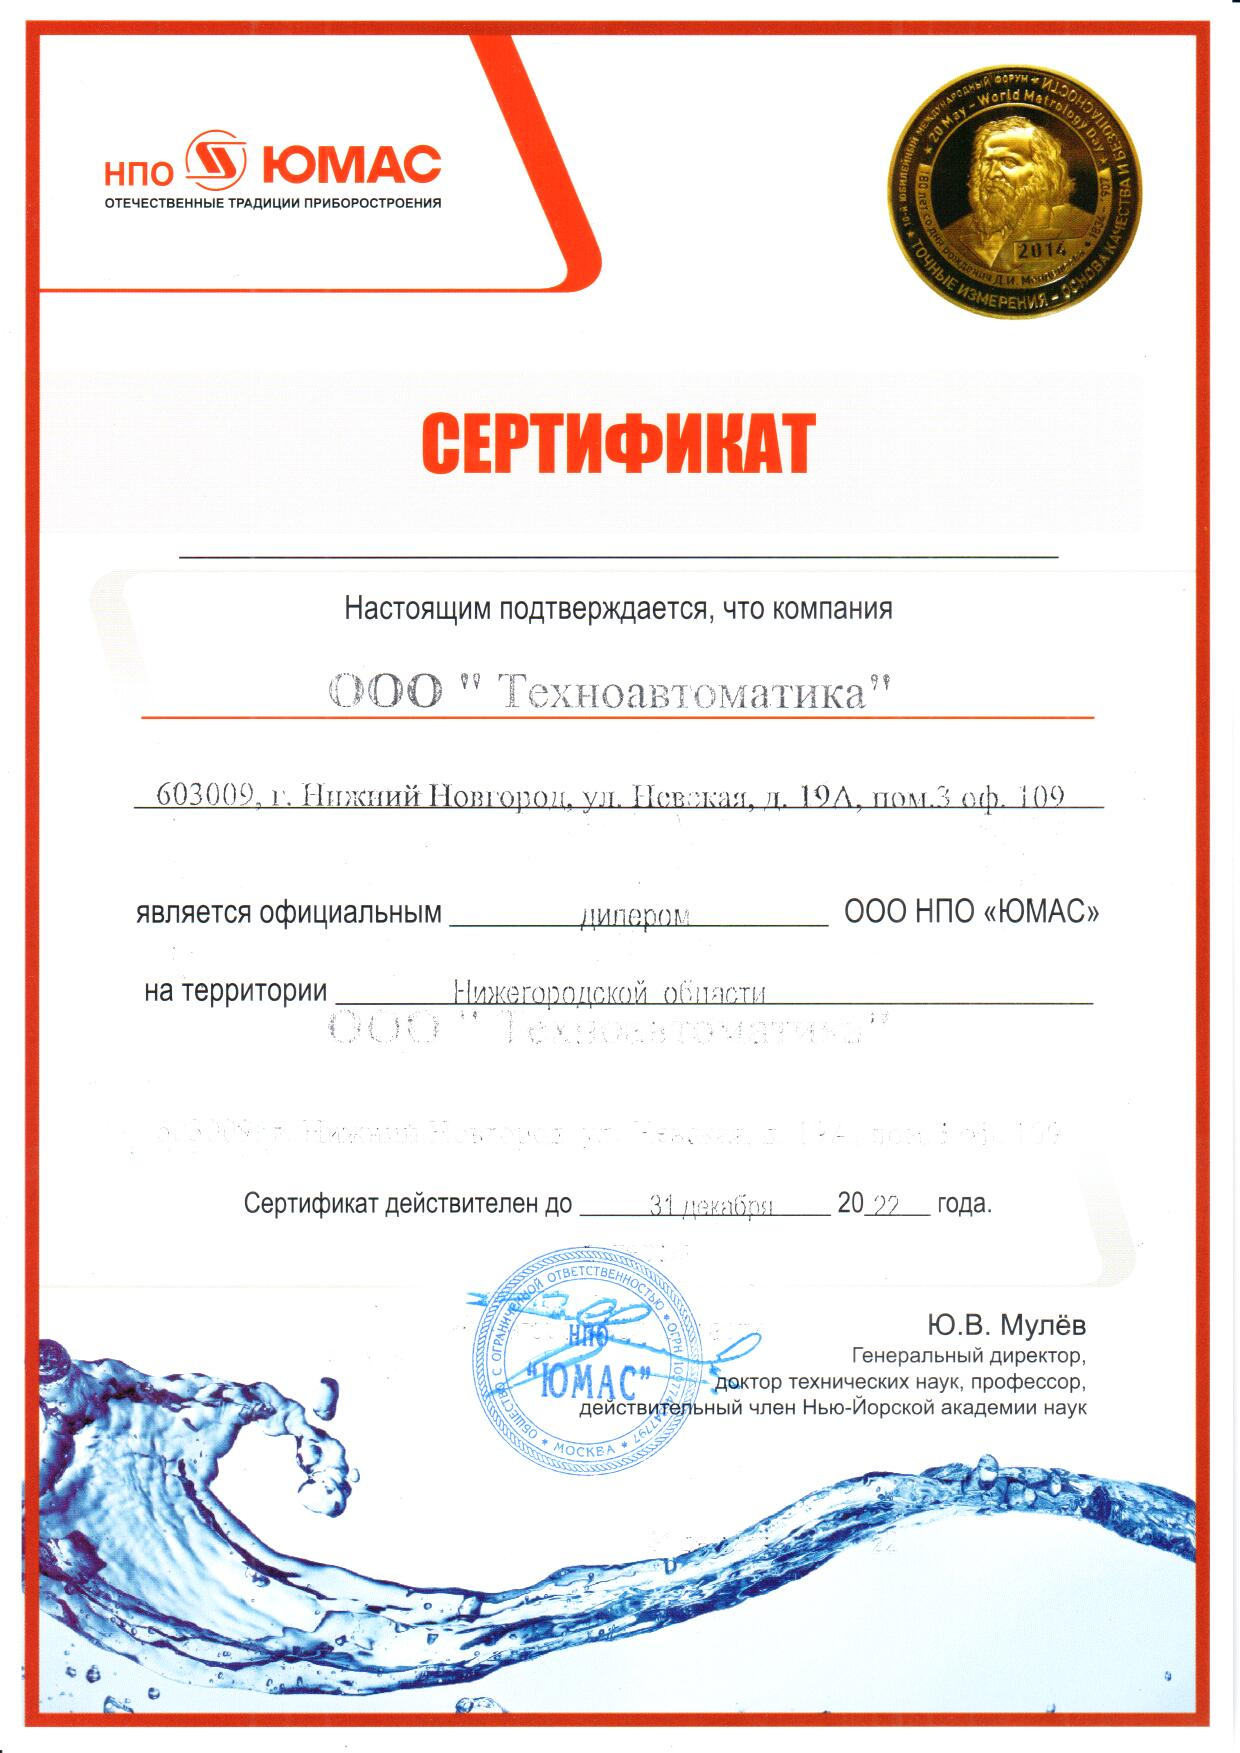 Сертификат дилера ЮМАС